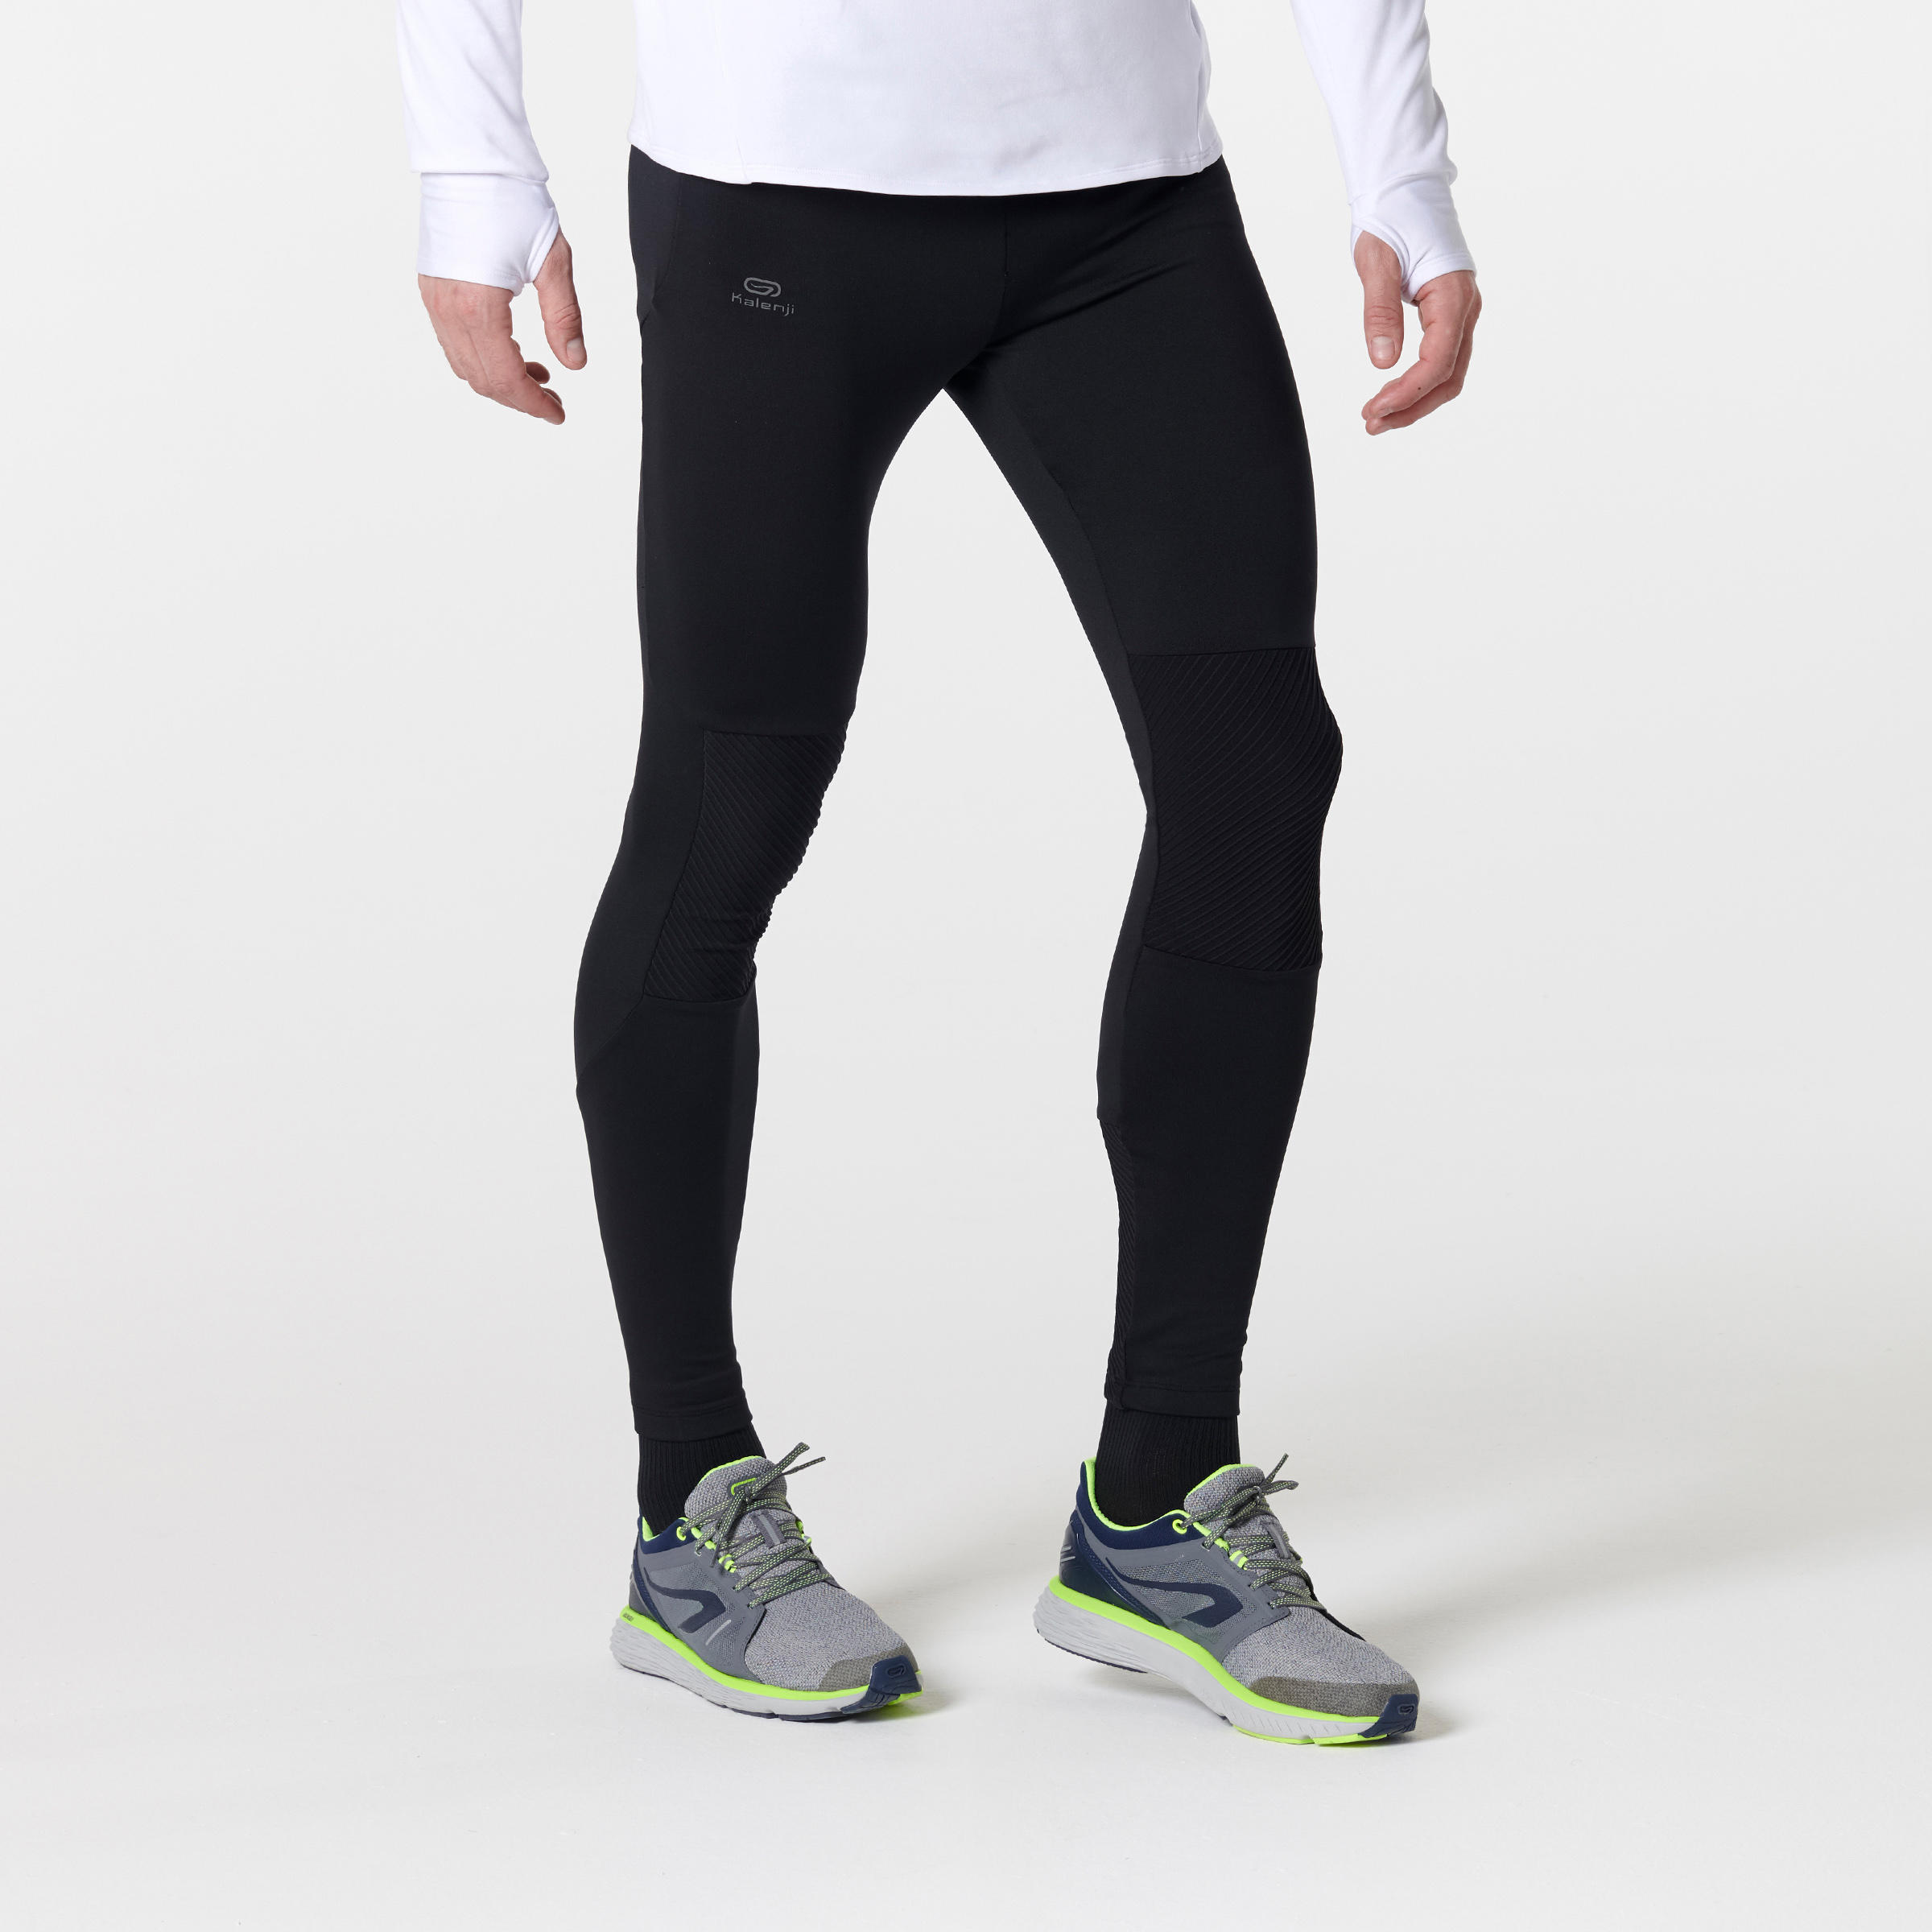 Buy Women's Running Breathable Long Leggings Dry+ Feel - Black Online |  Decathlon